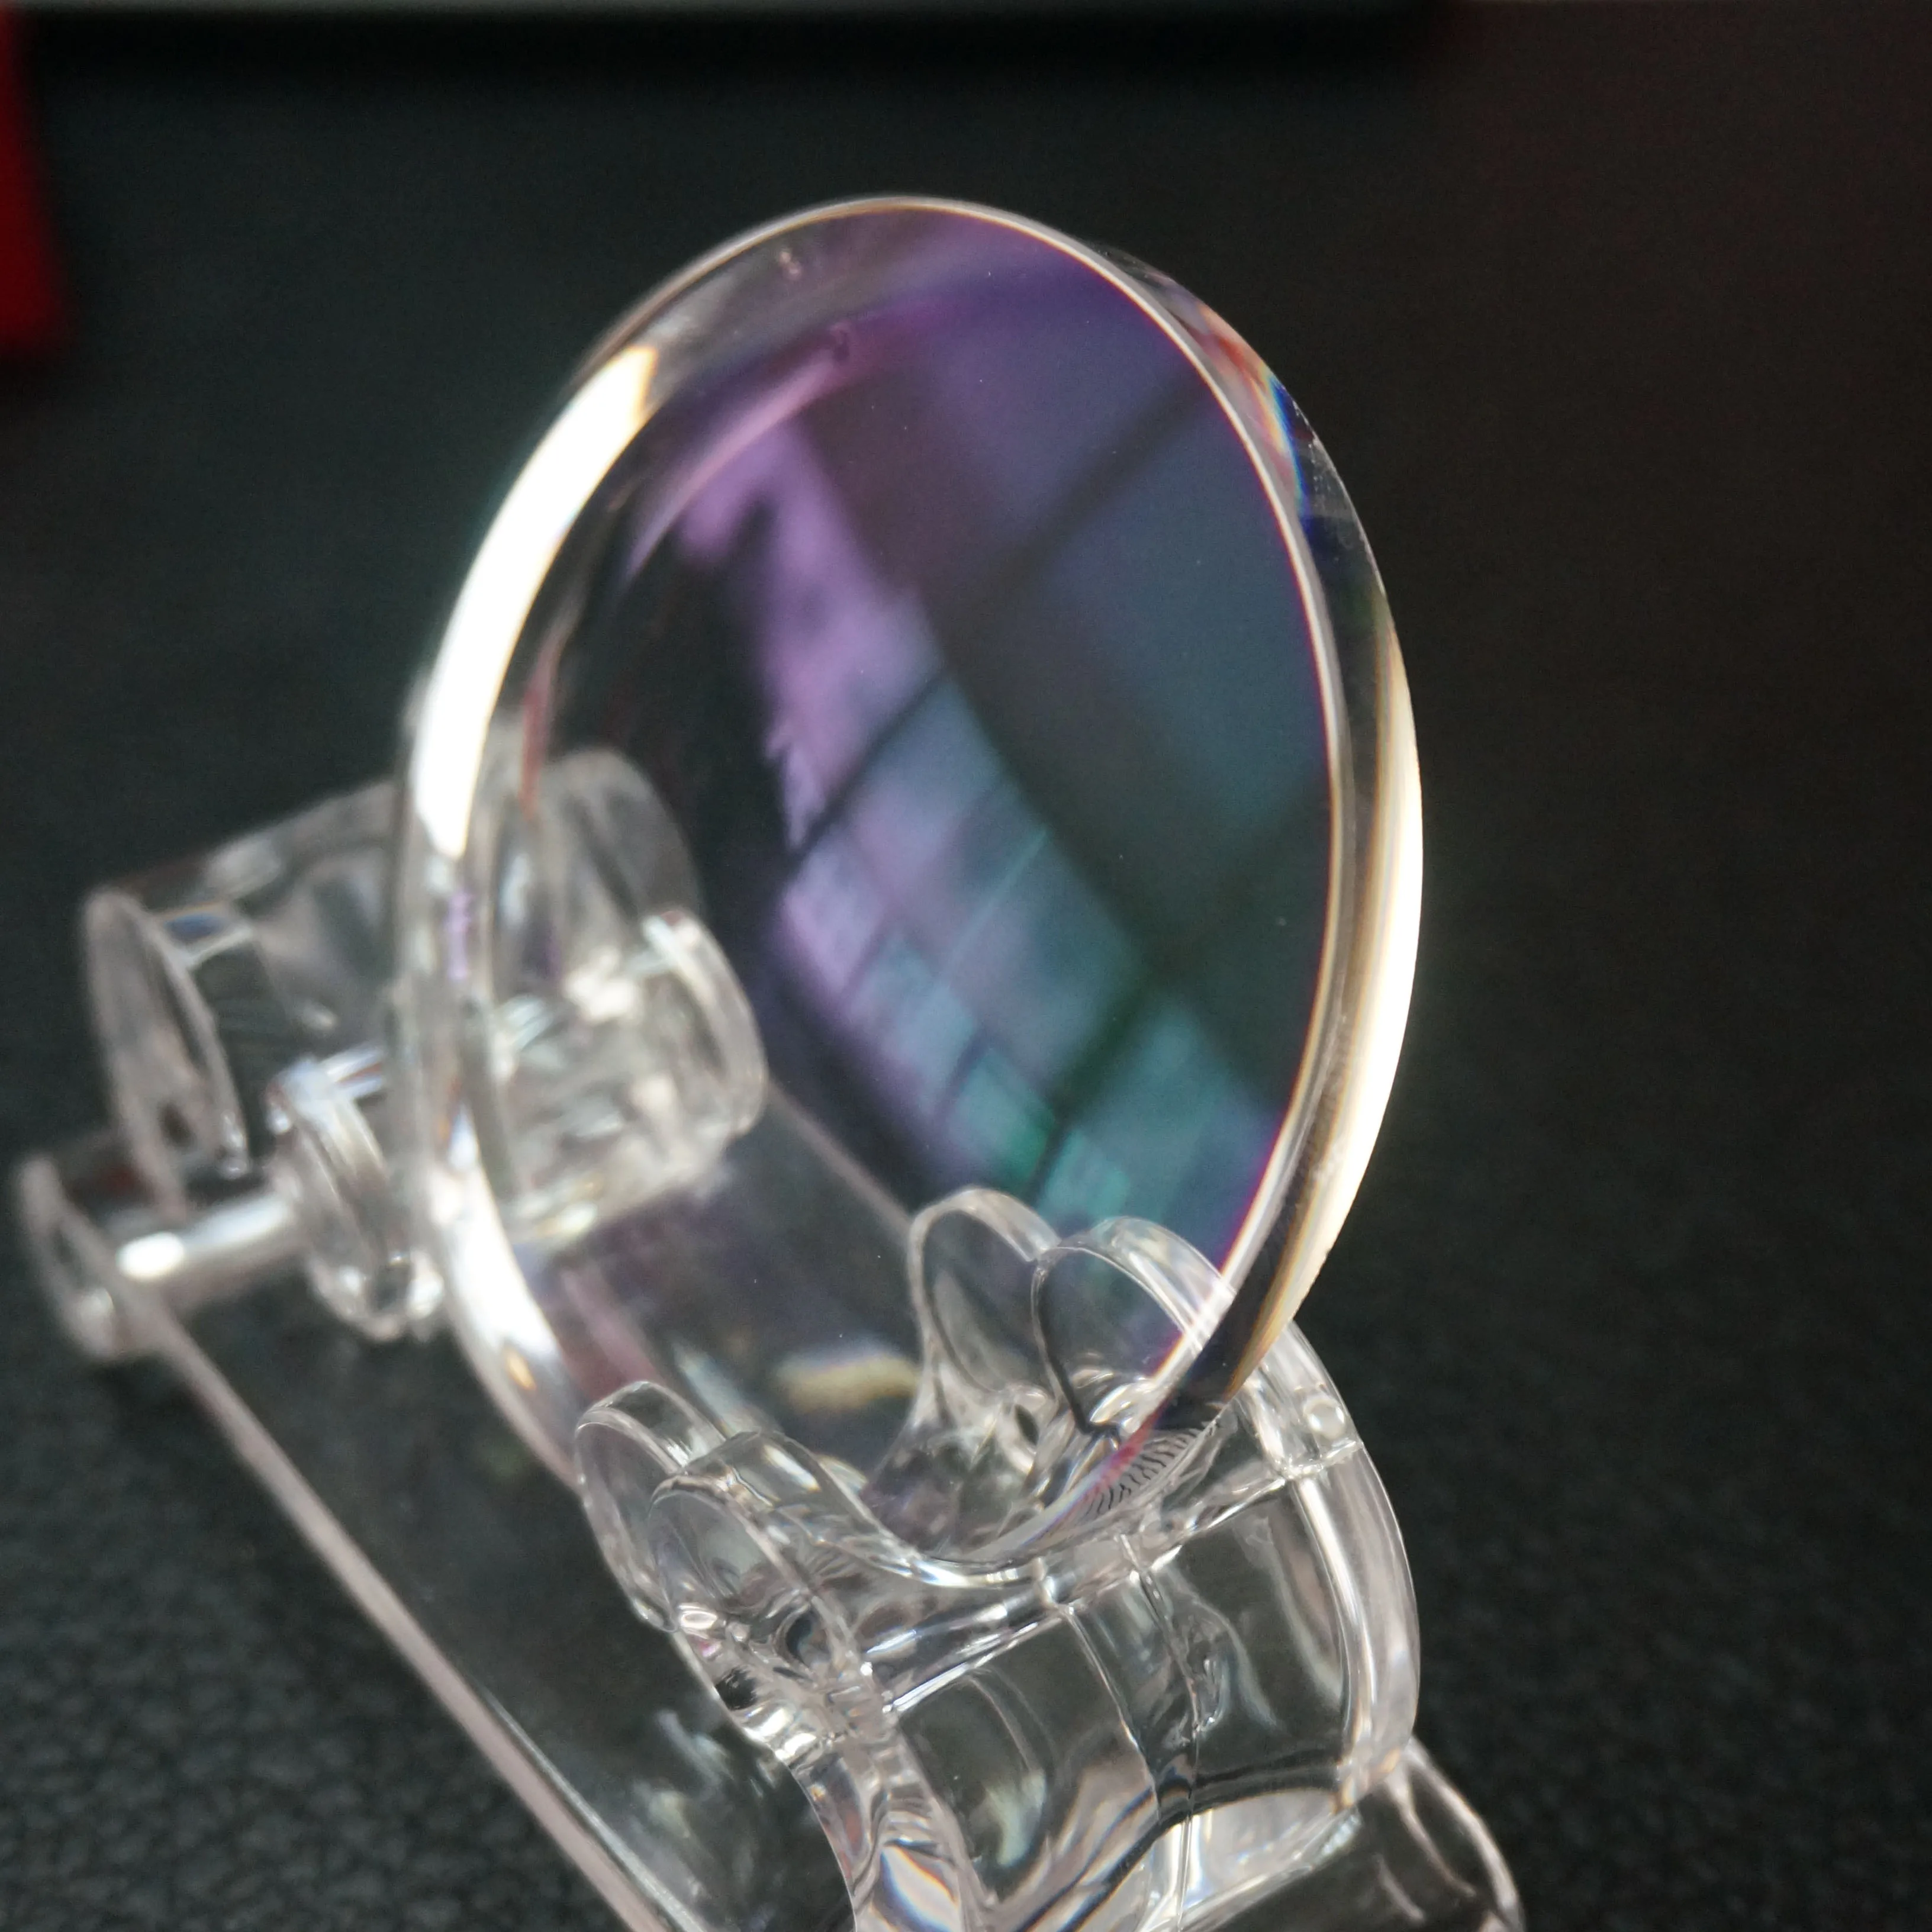 Classical glass lenses 1.74 hmc uv400 high index optical lens for eyeglass